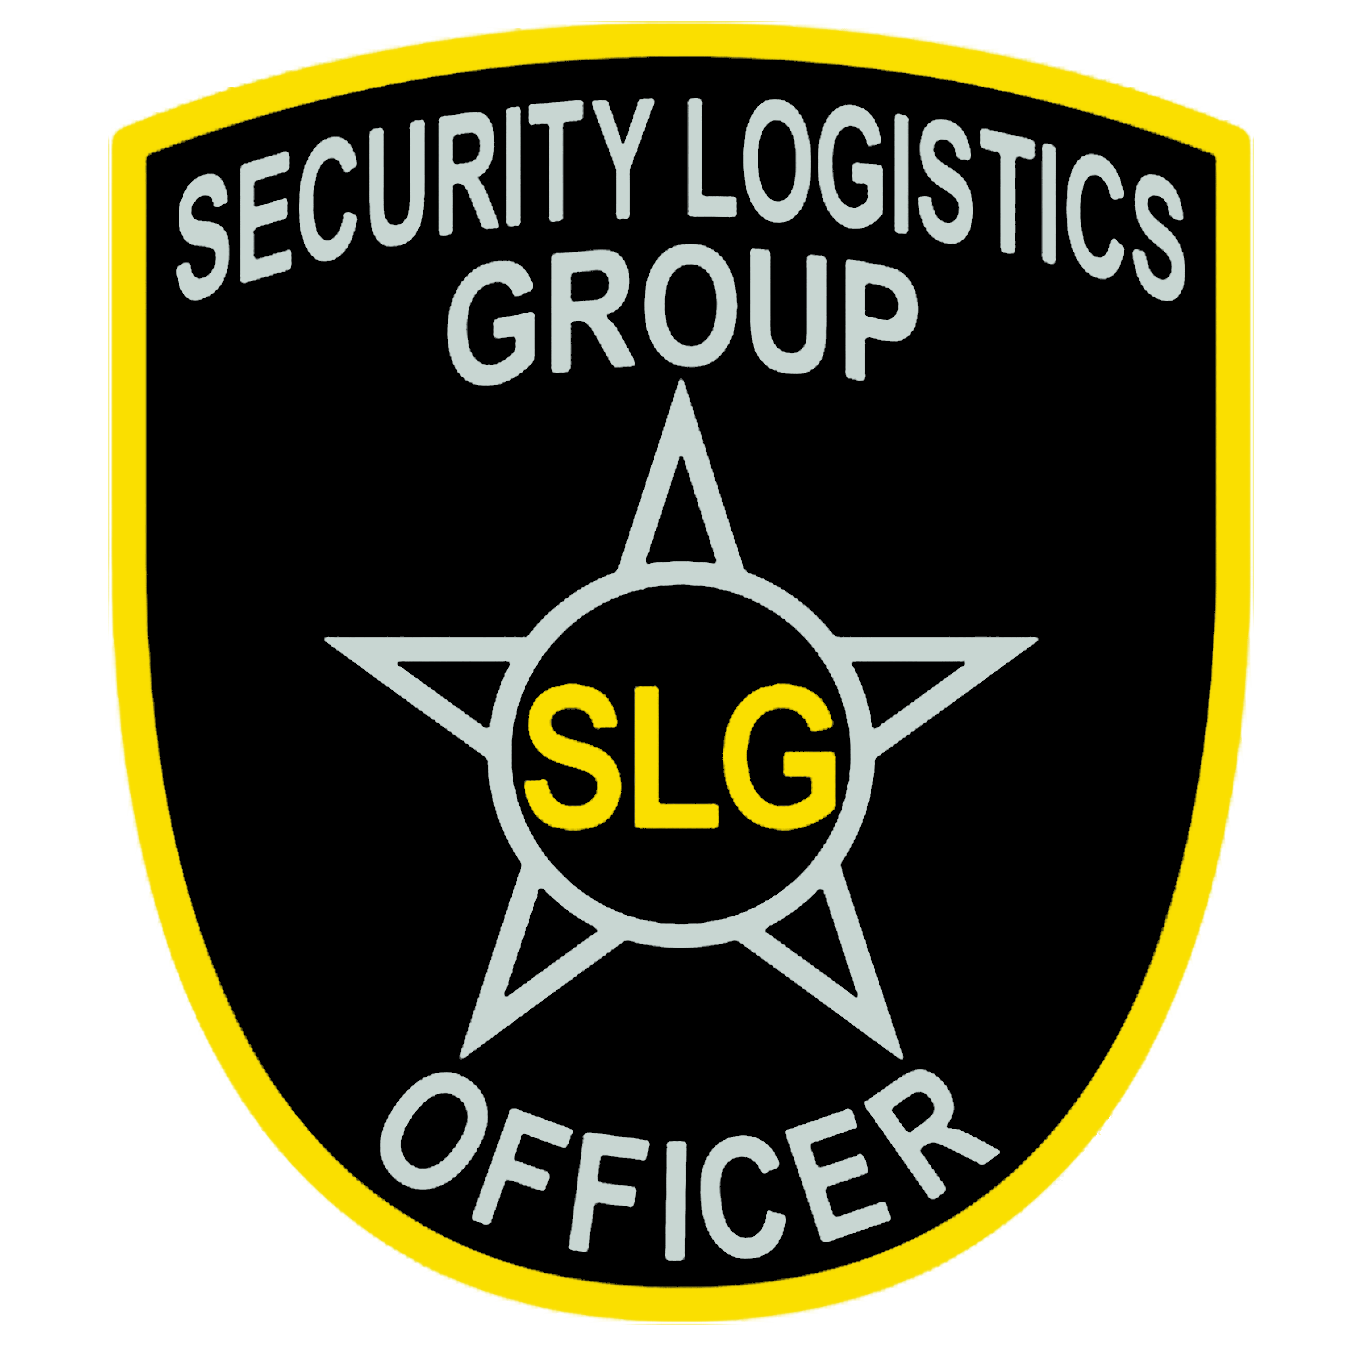 Security Logistics Group